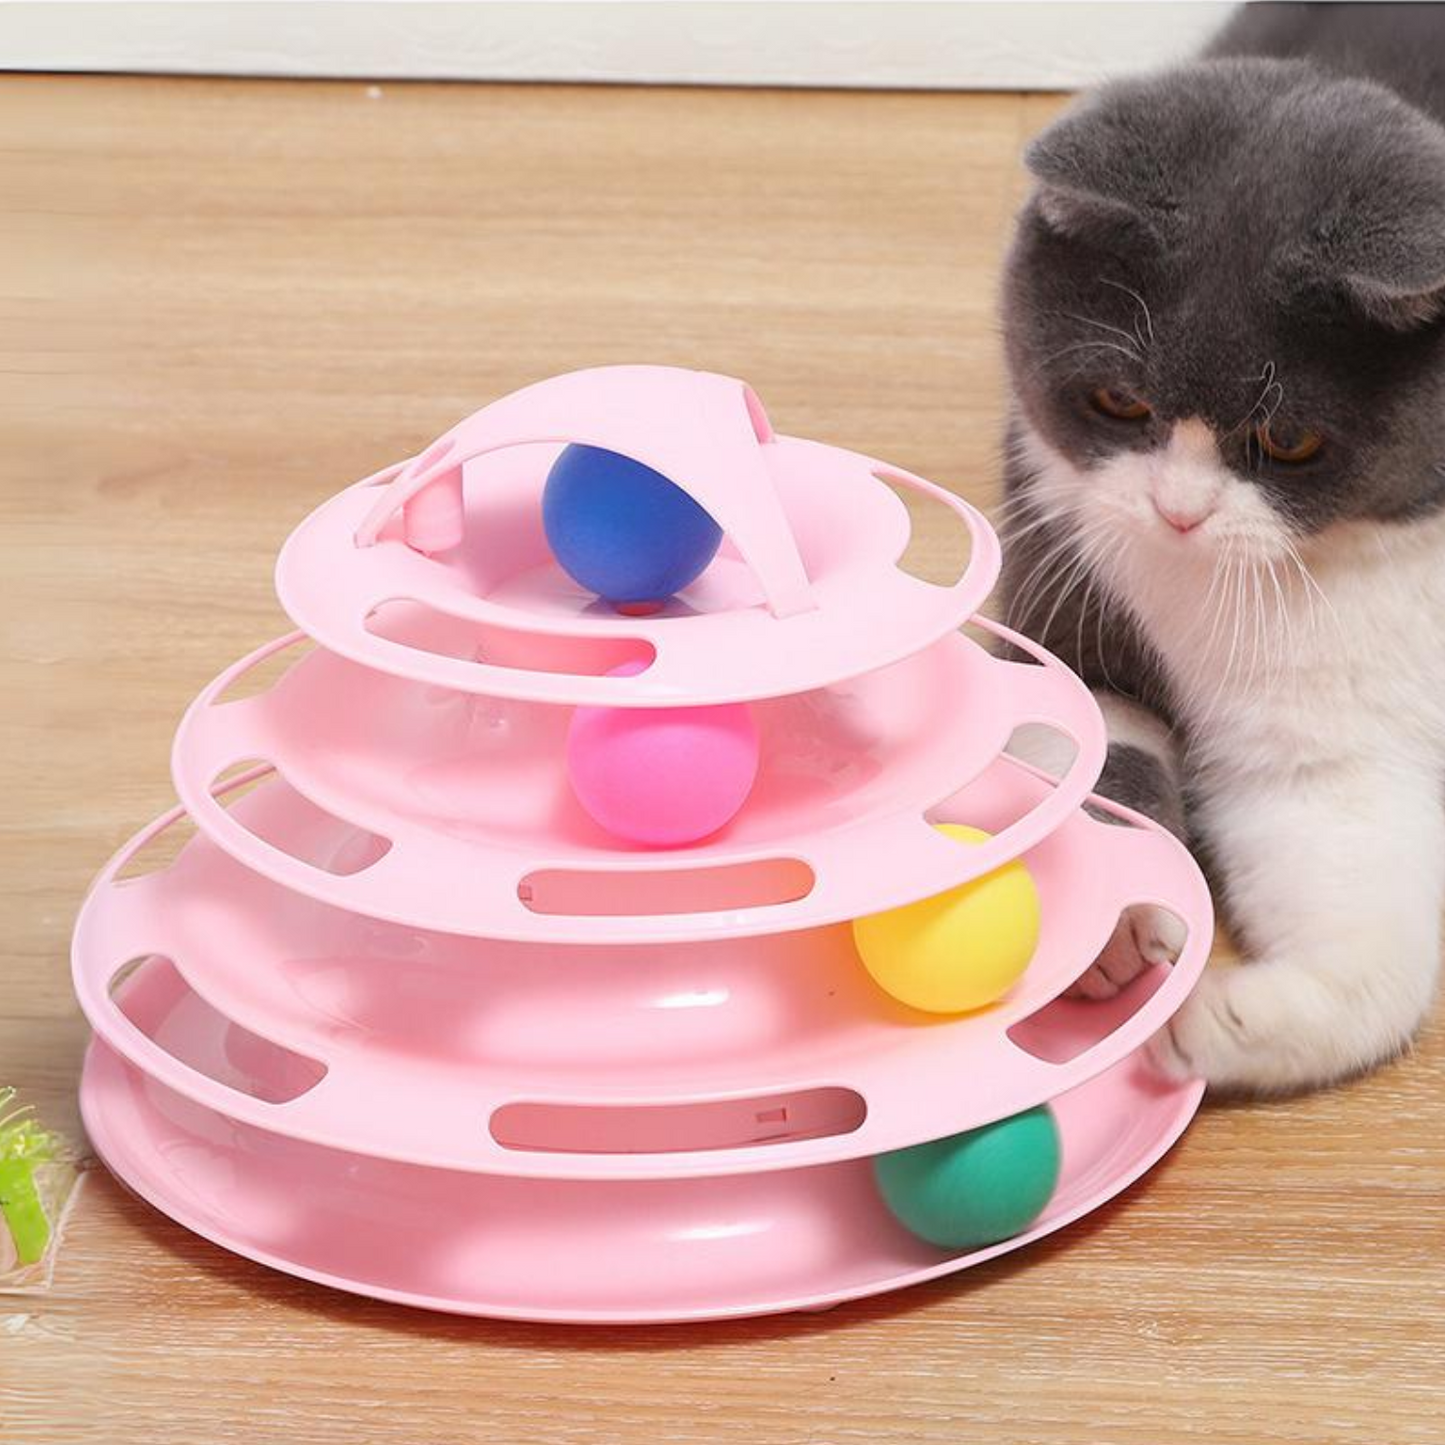 Juguete torre para gatos rosado